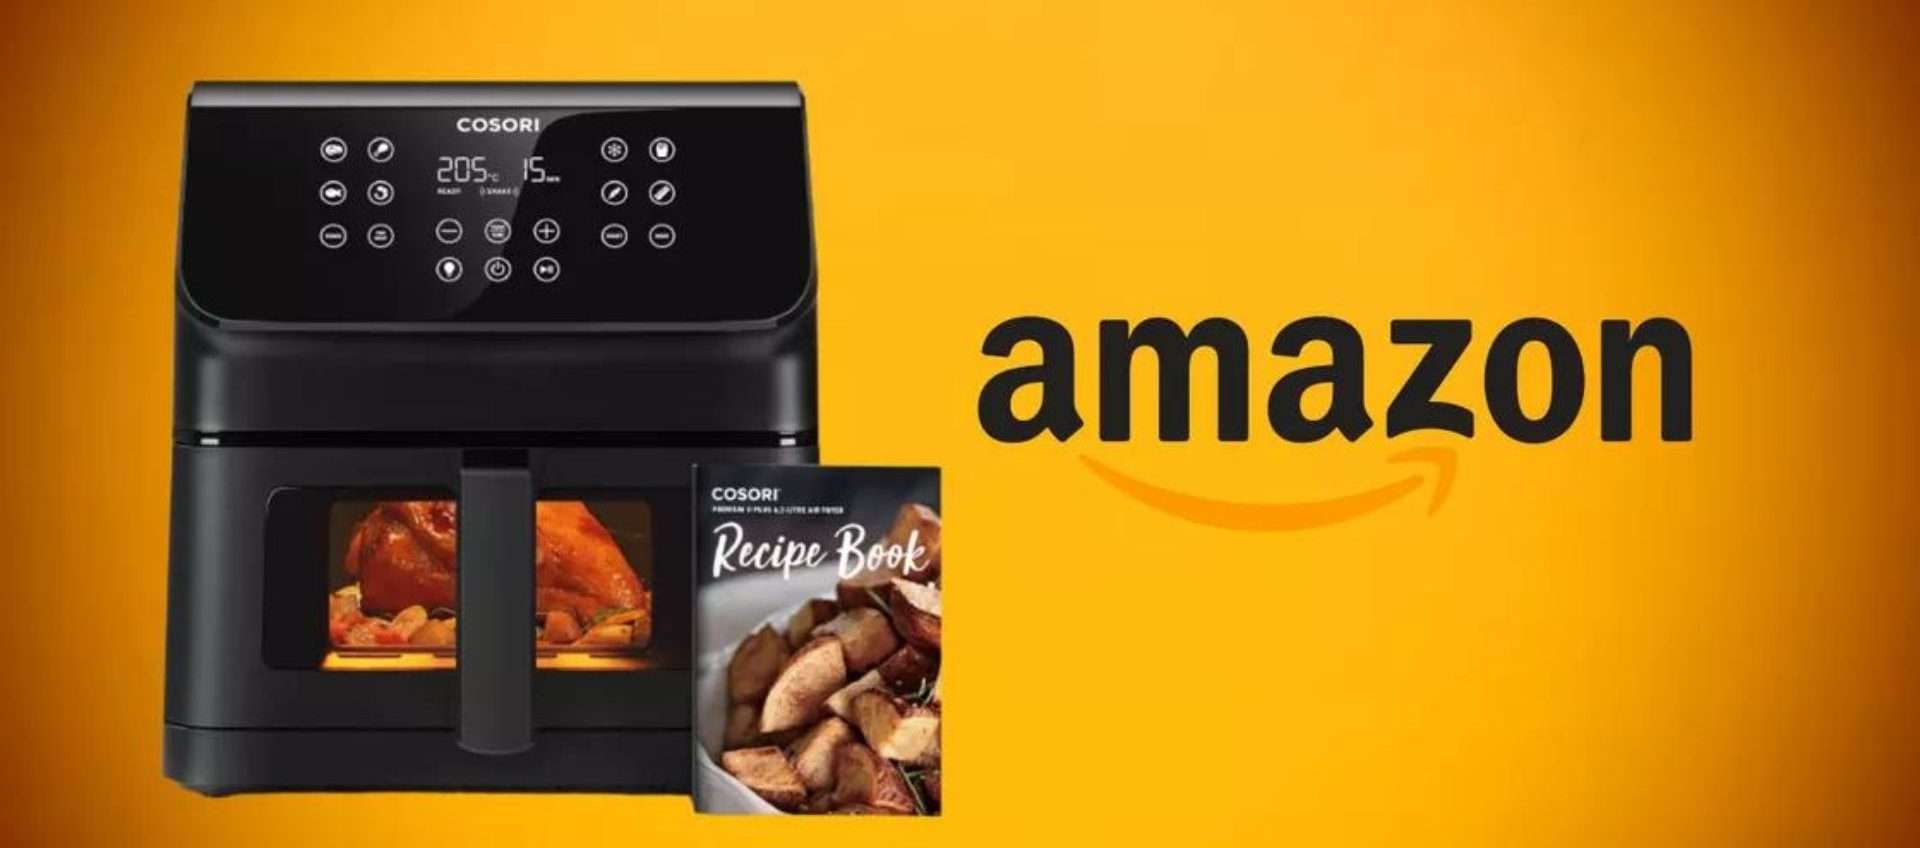 Friggitrice ad aria in super offerta su Amazon: risparmi 40€